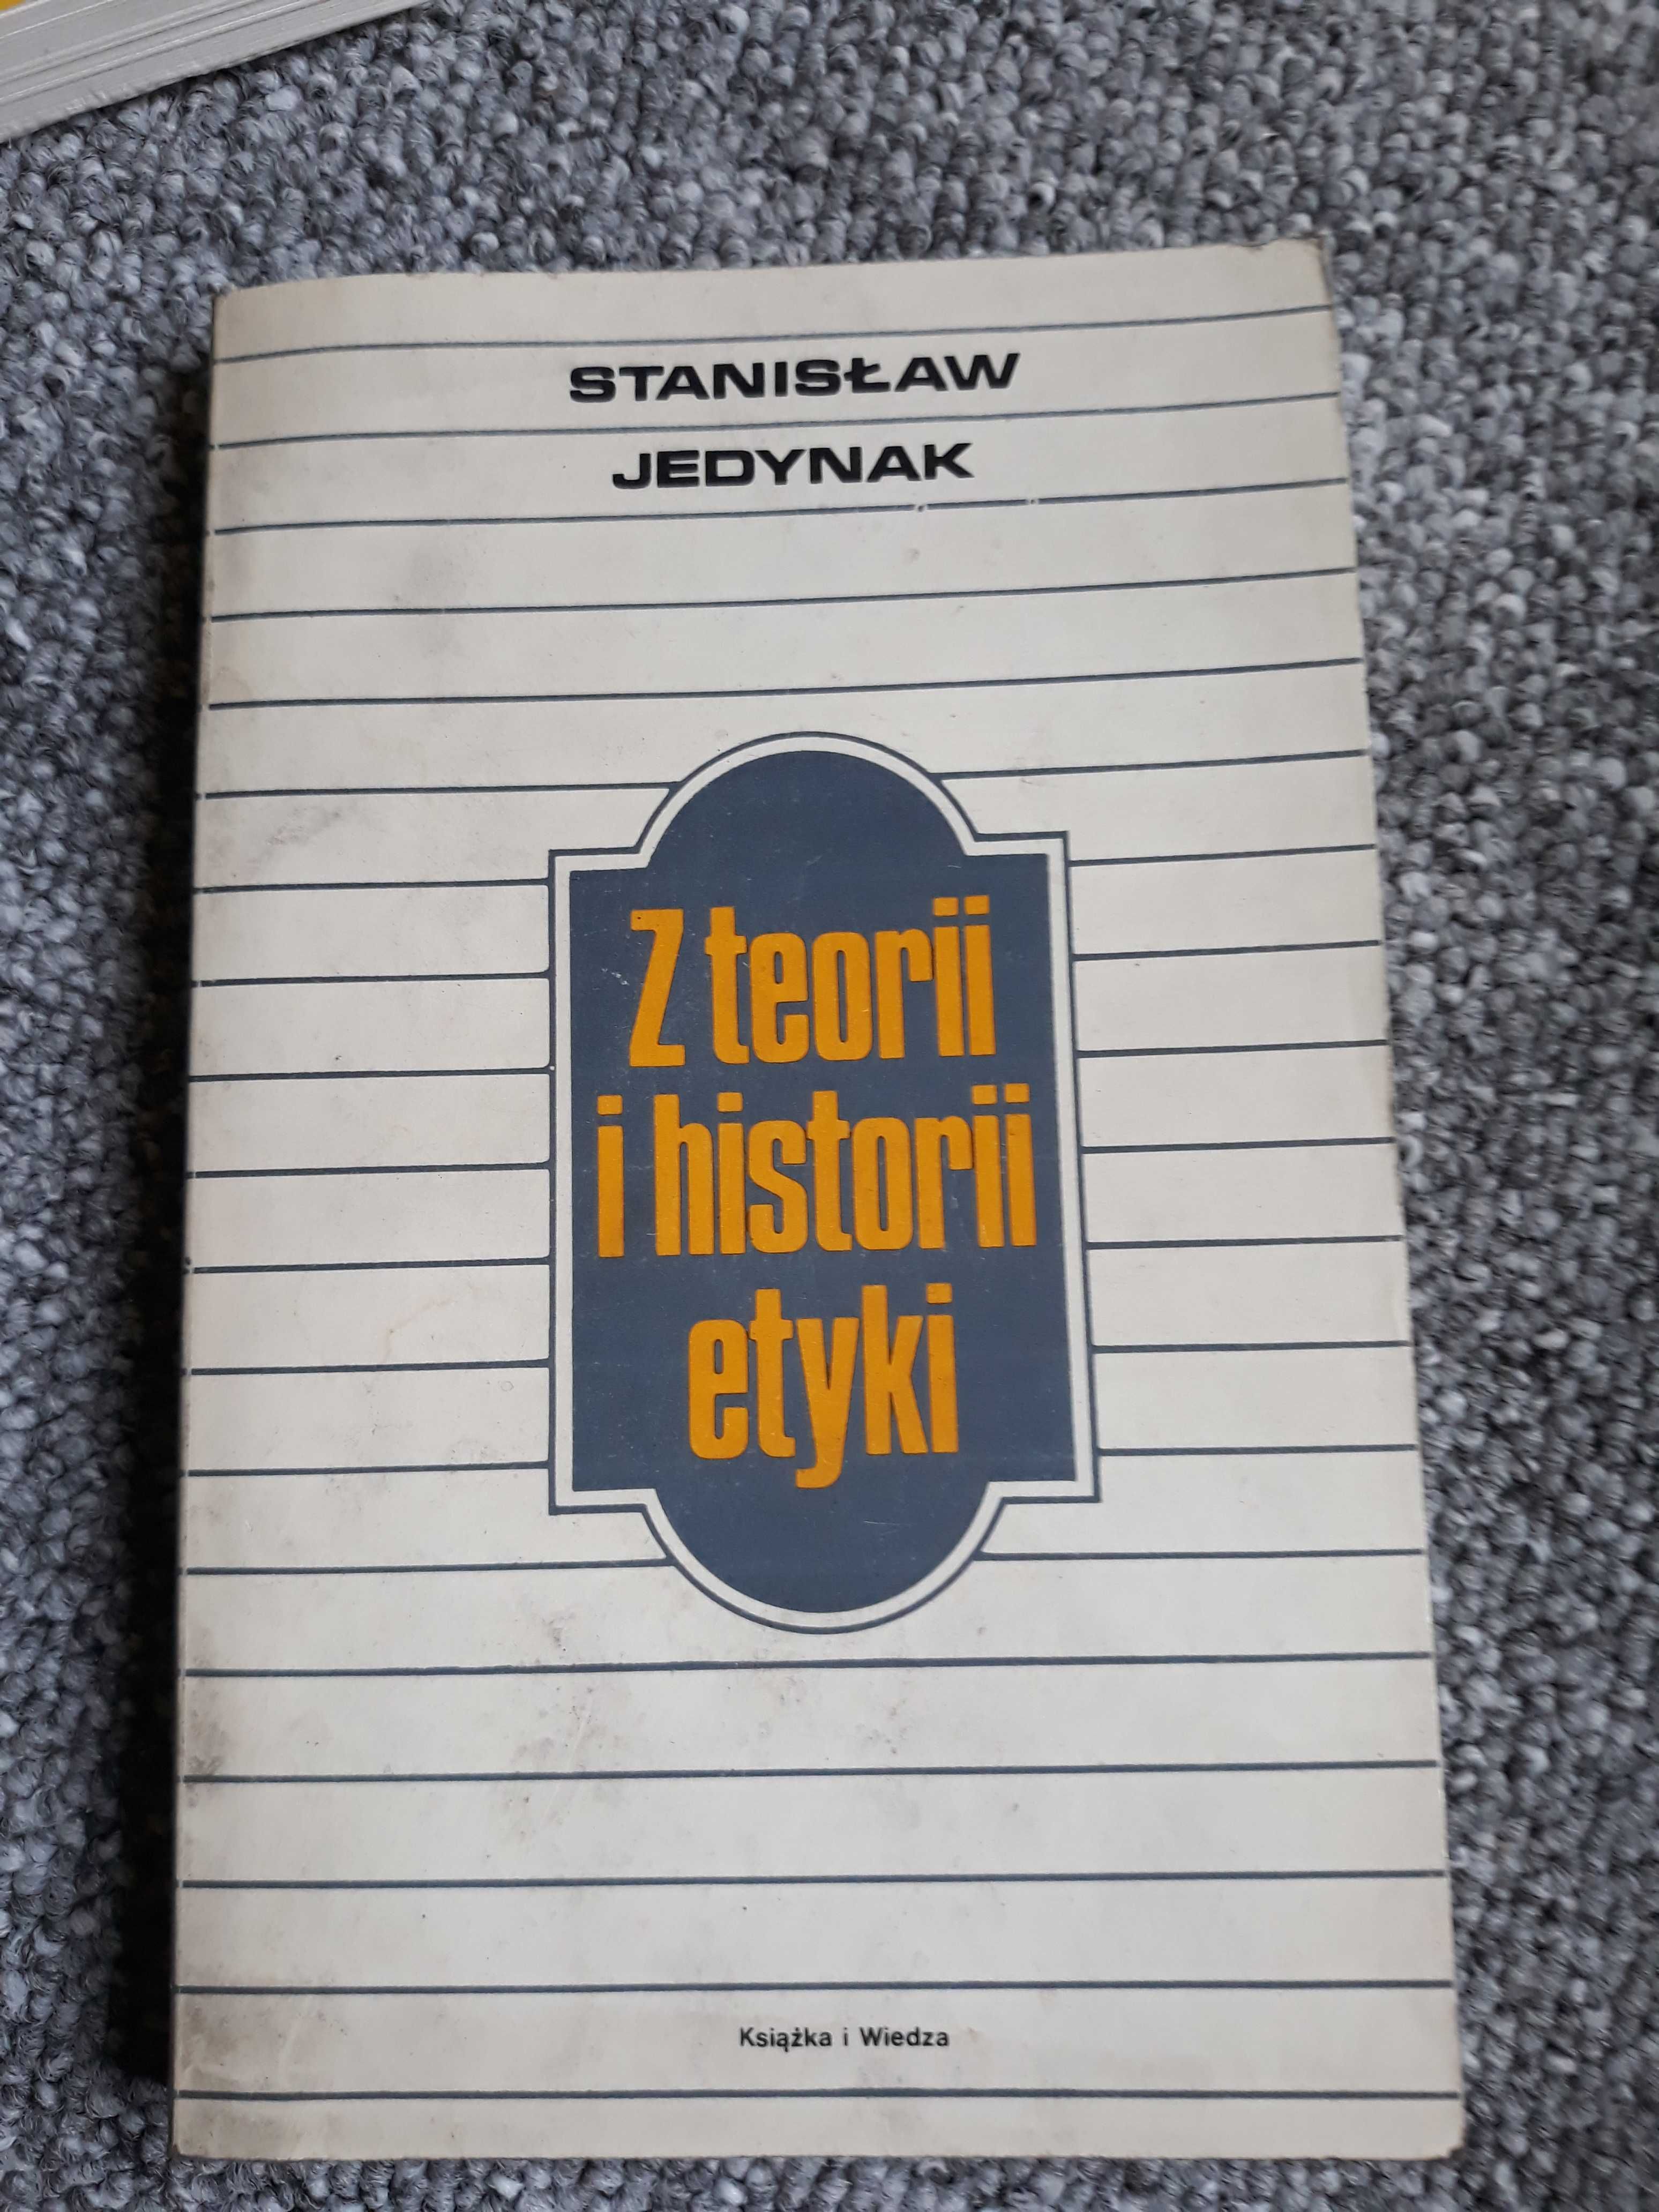 Z teorii i historii etyki - Stanisław Jedynak